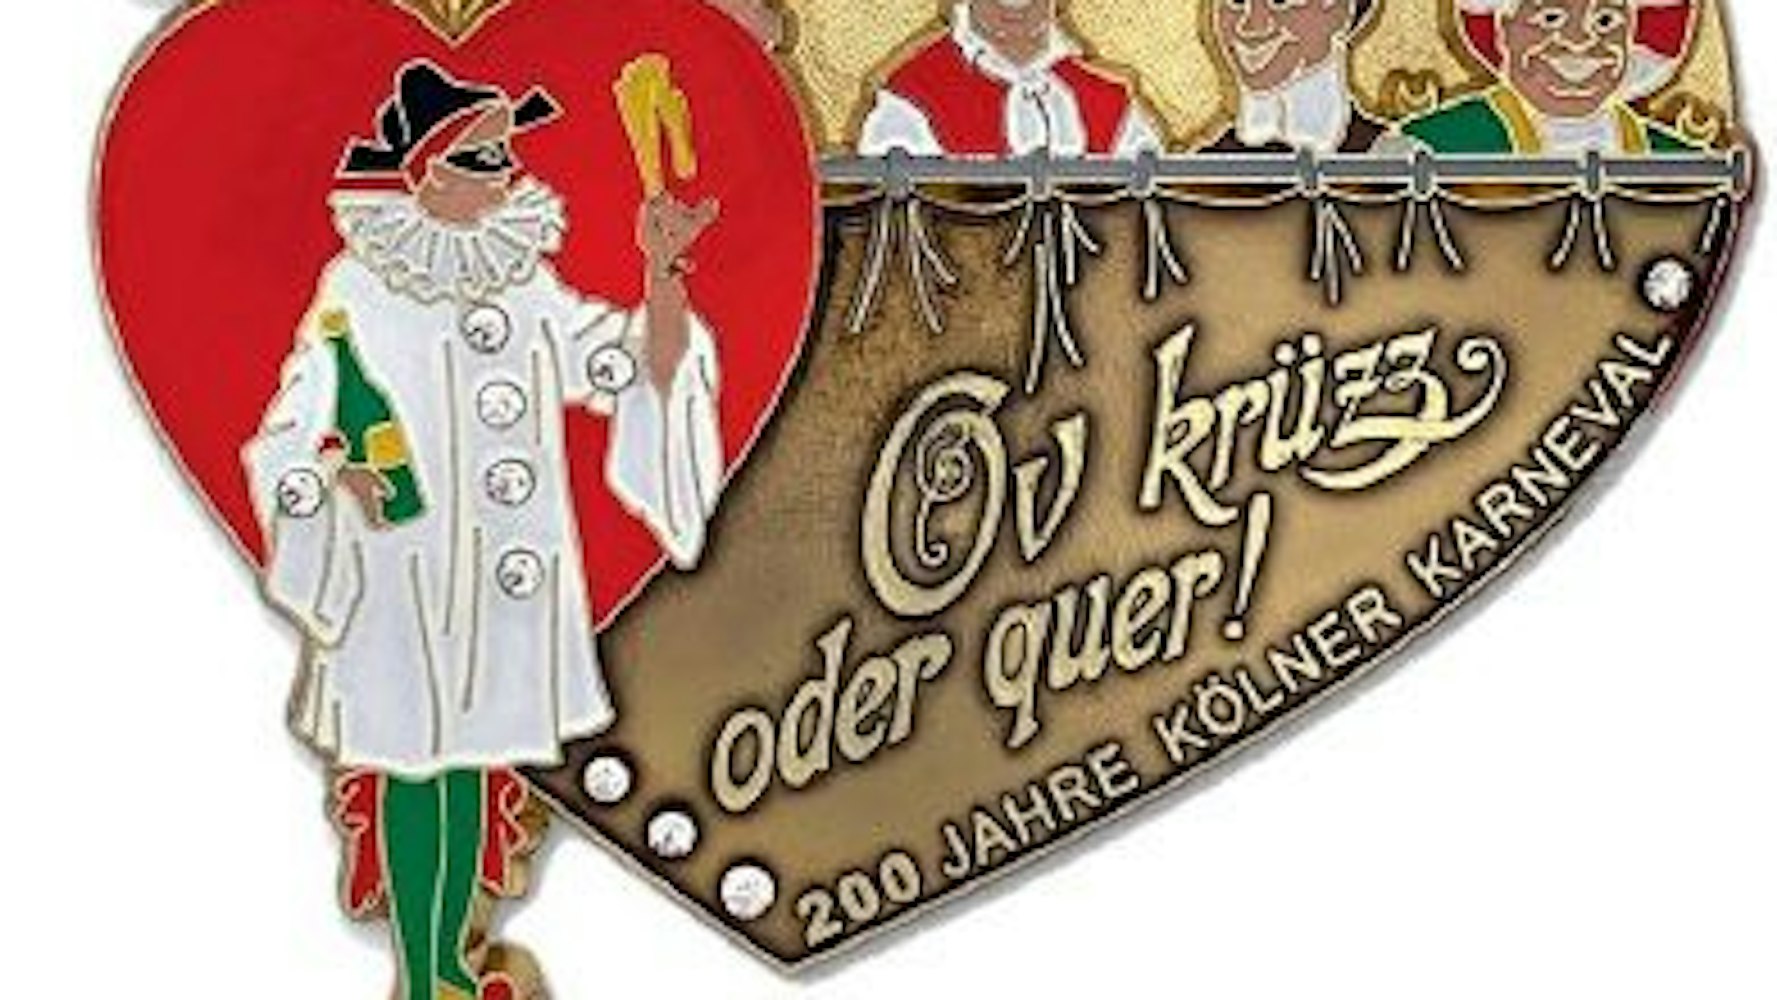 Orden der Kölner Narren-Zunft, der dem Notendeckblatt des „Allgemeinen Karnevals-Marschlieds“ aus dem Jahr 1905 nachempfunden ist